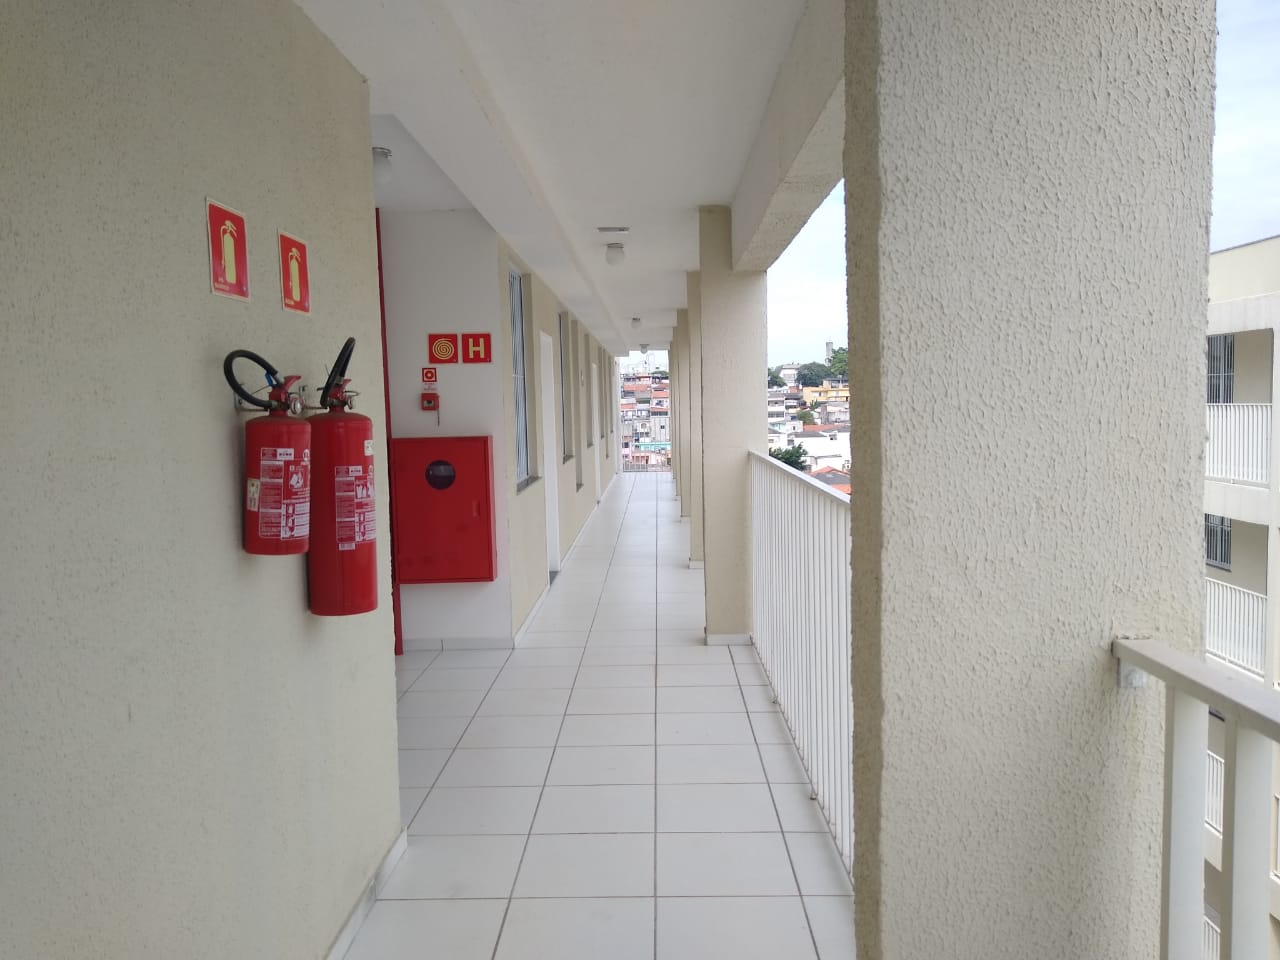 Foto do corredor do empreendimento. No primeiro plano estão extintores de incêndio. As paredes possuem a cor creme, com o chão sendo branco